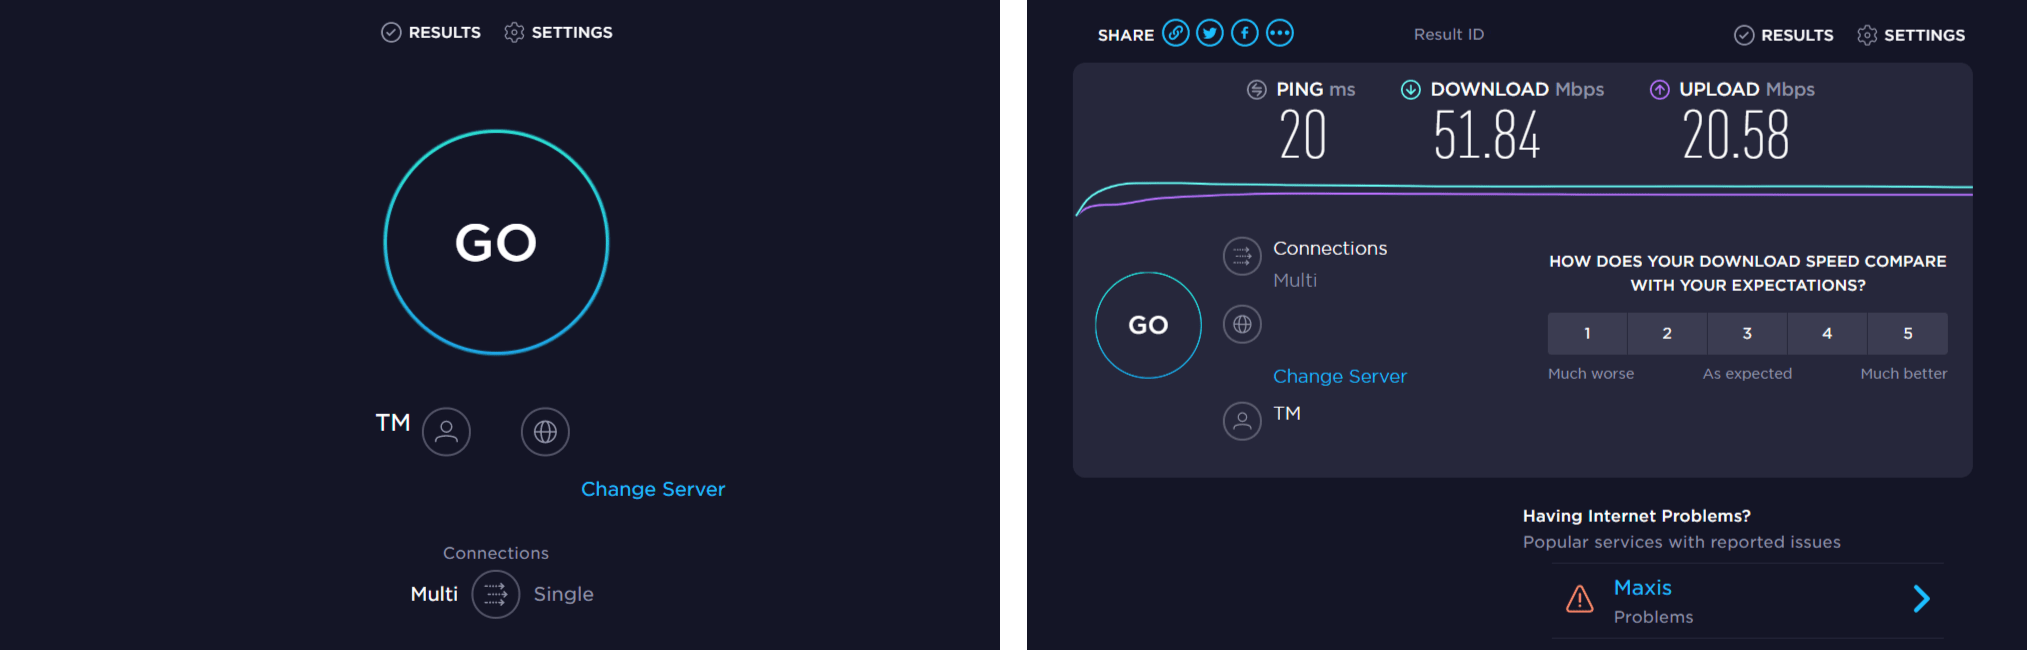 Check internet speed with Speedtest